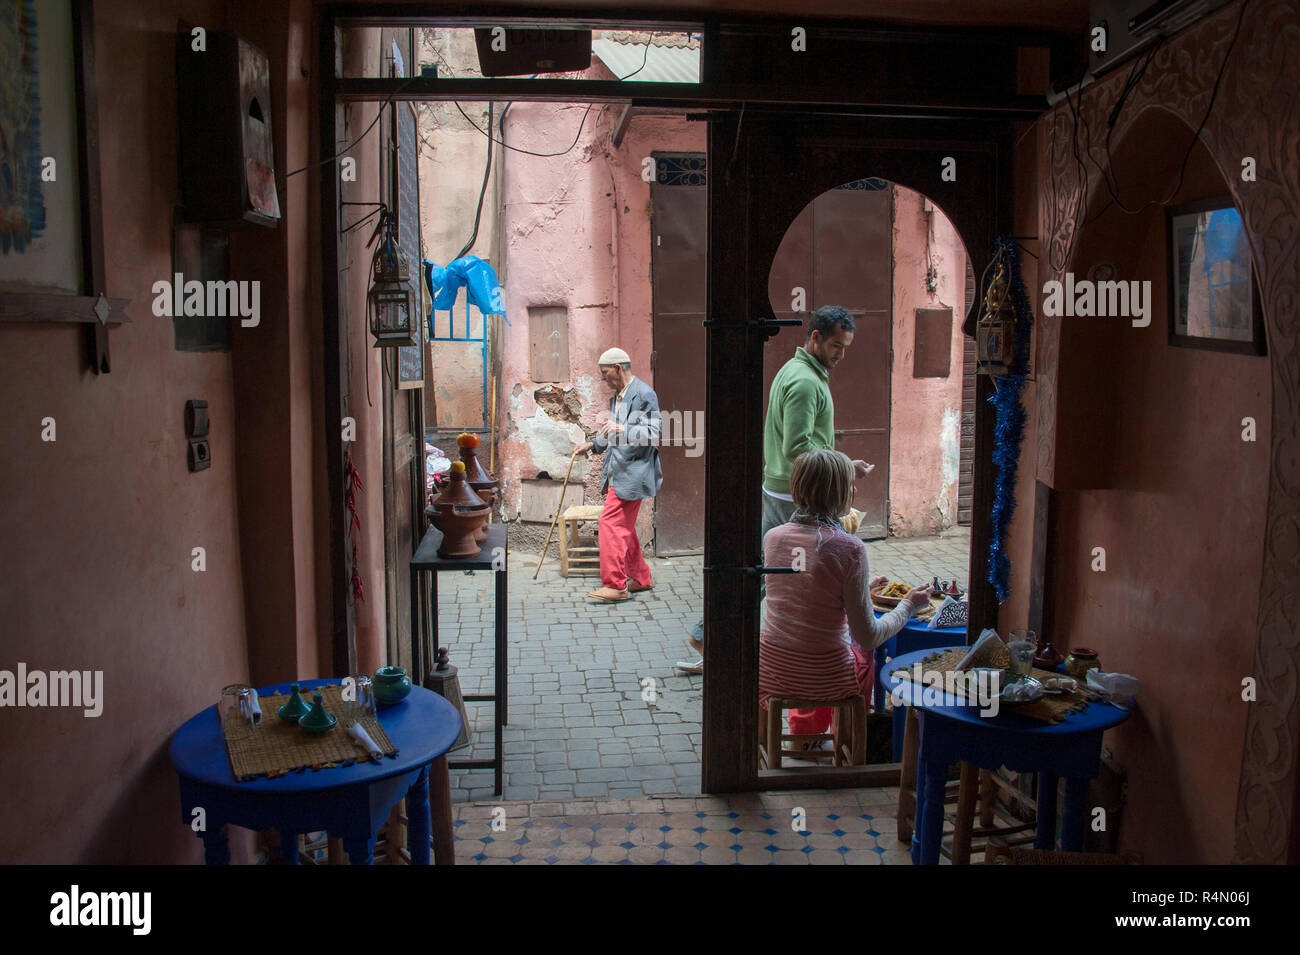 18-04-11. Marrakech, Marocco. Scena di strada nella medina, fotografata da dentro un caffè guardando fuori. Foto © Simon Grosset / Q Fotografia Foto Stock